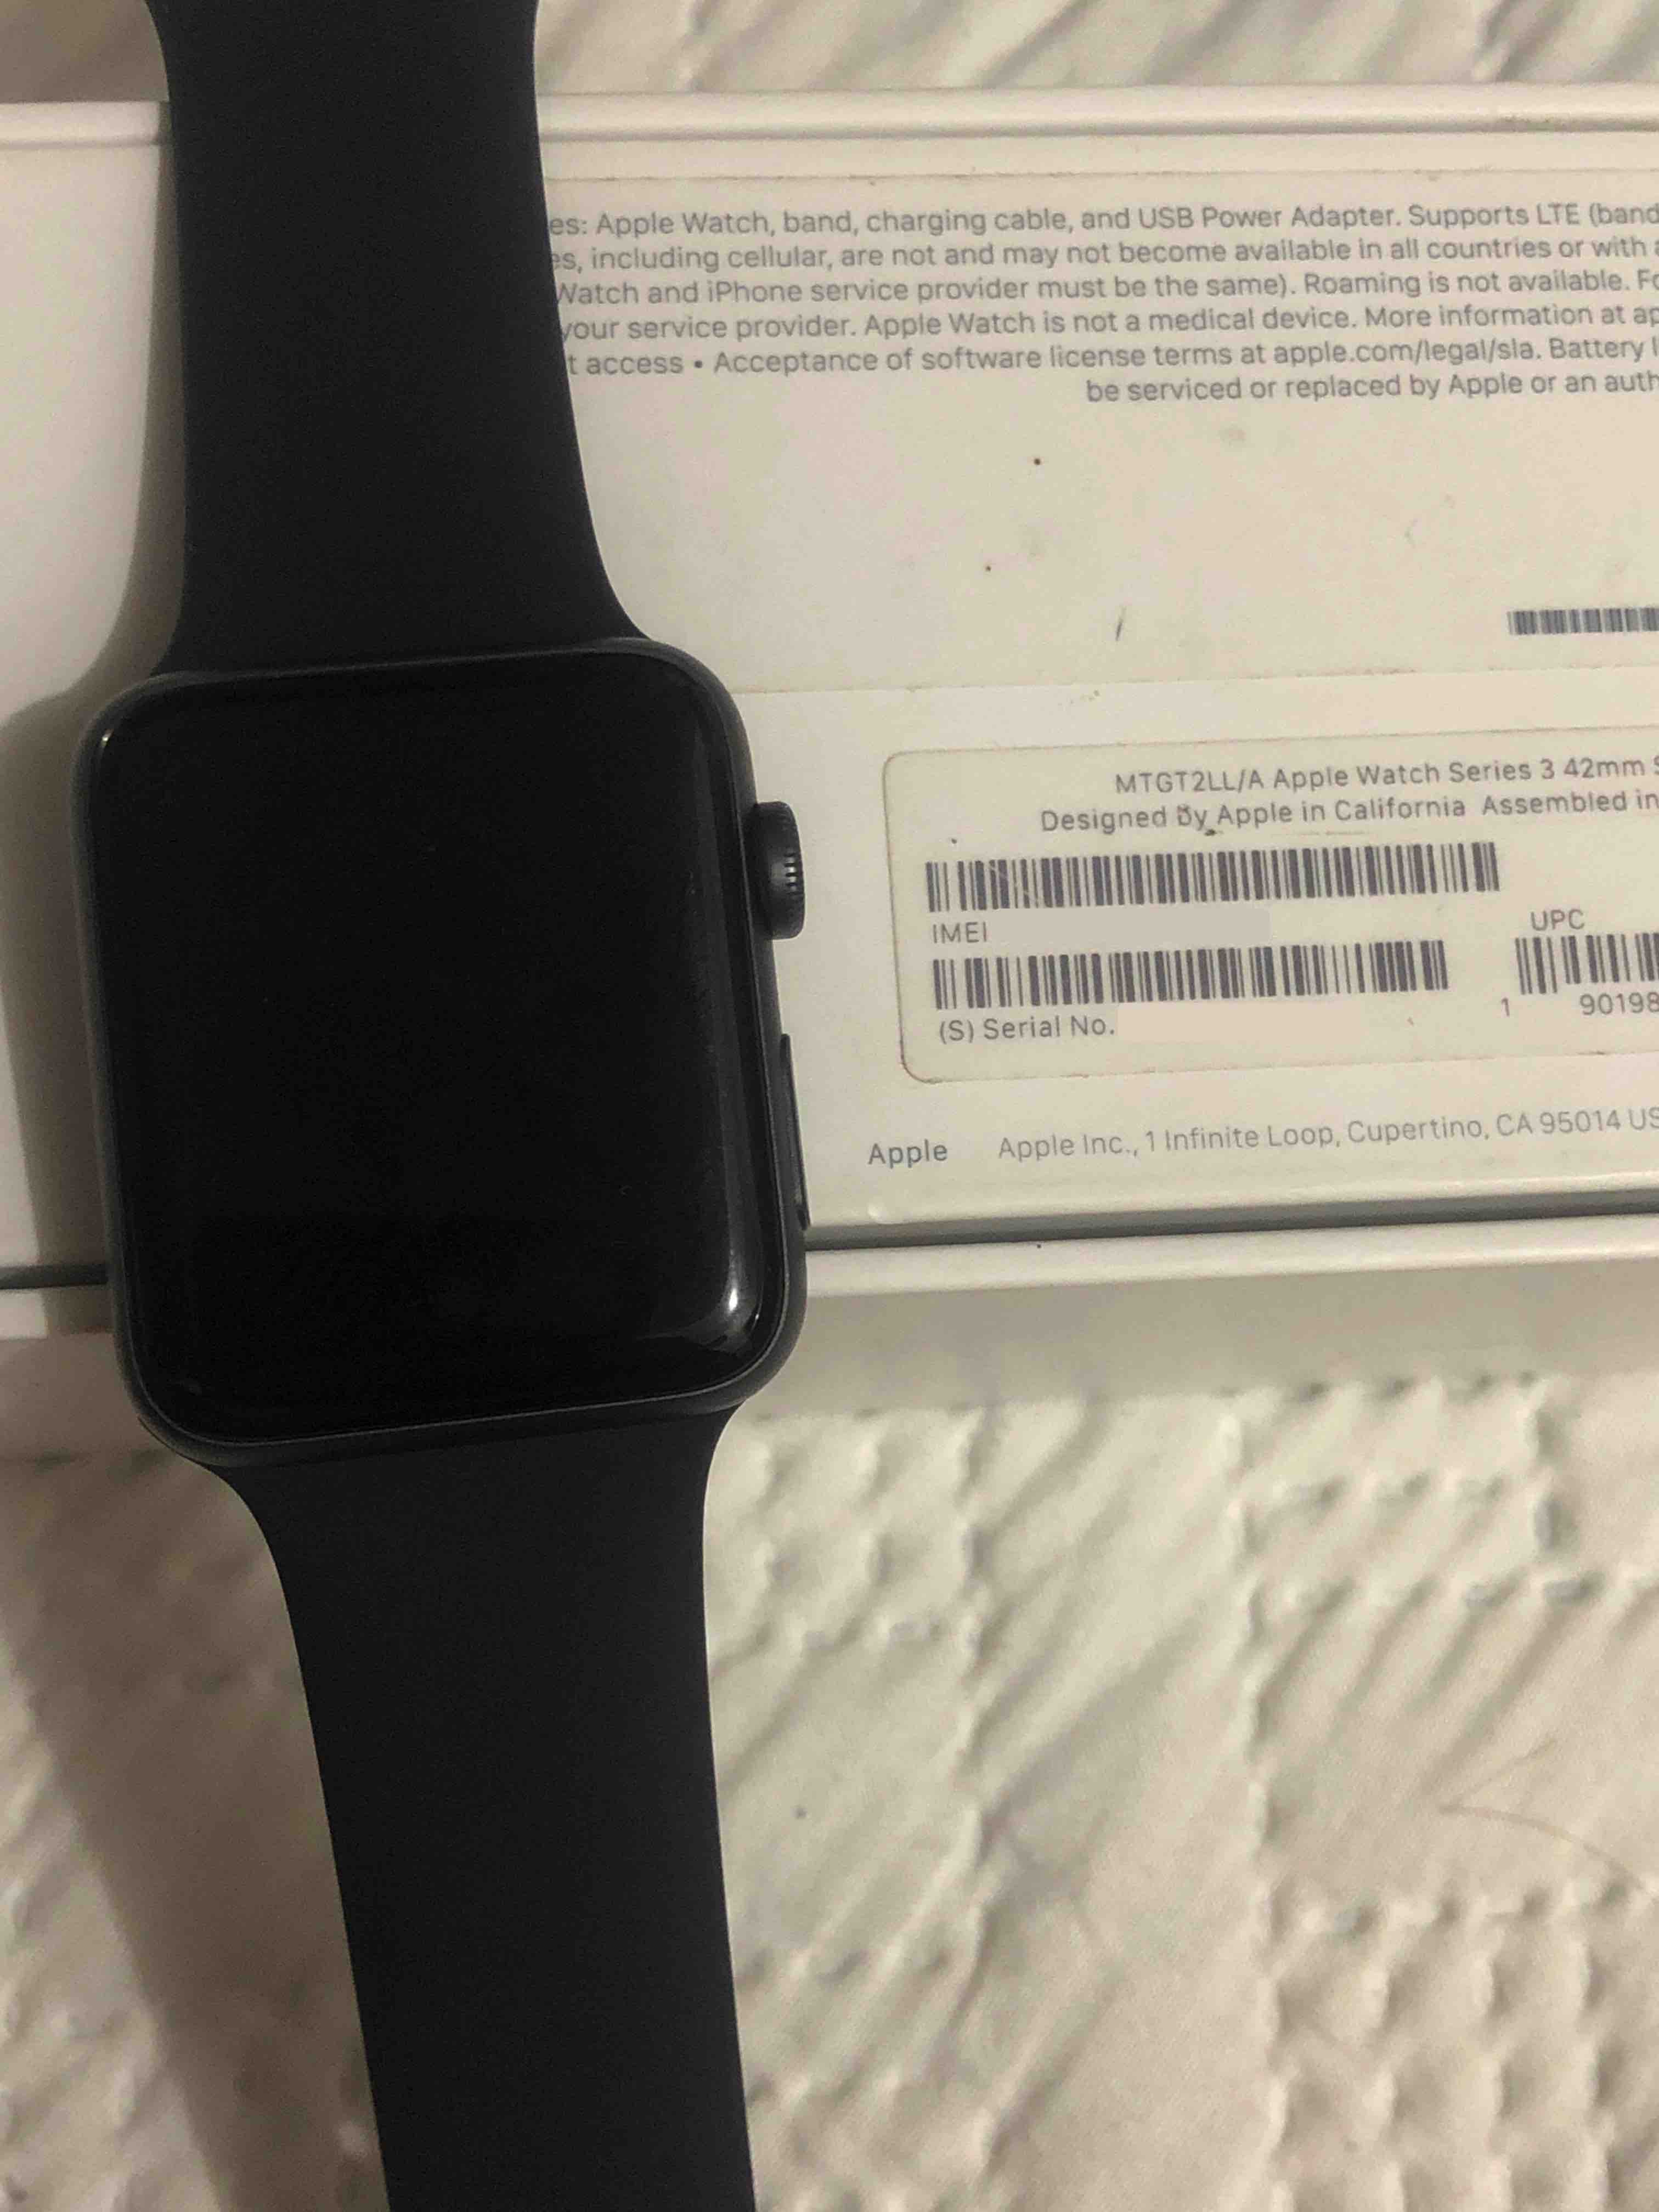 Tengo un Watch de segunda mano l… - Comunidad Apple